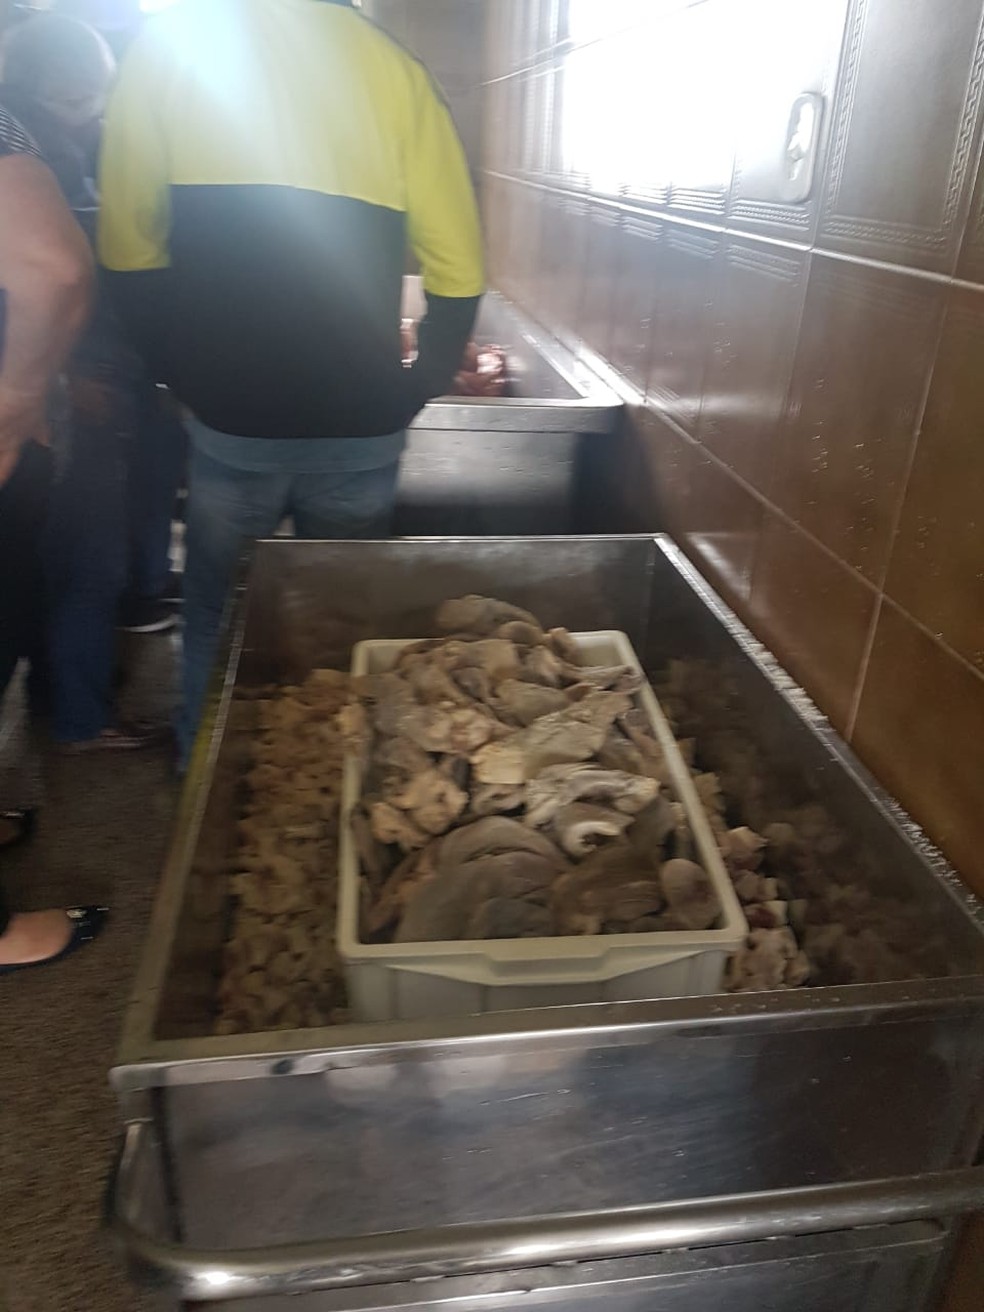 Alimentos foram apreendidos e levados para um aterro sanitário, segundo MP-AC — Foto: Divulgação/Ministério Público do Acre